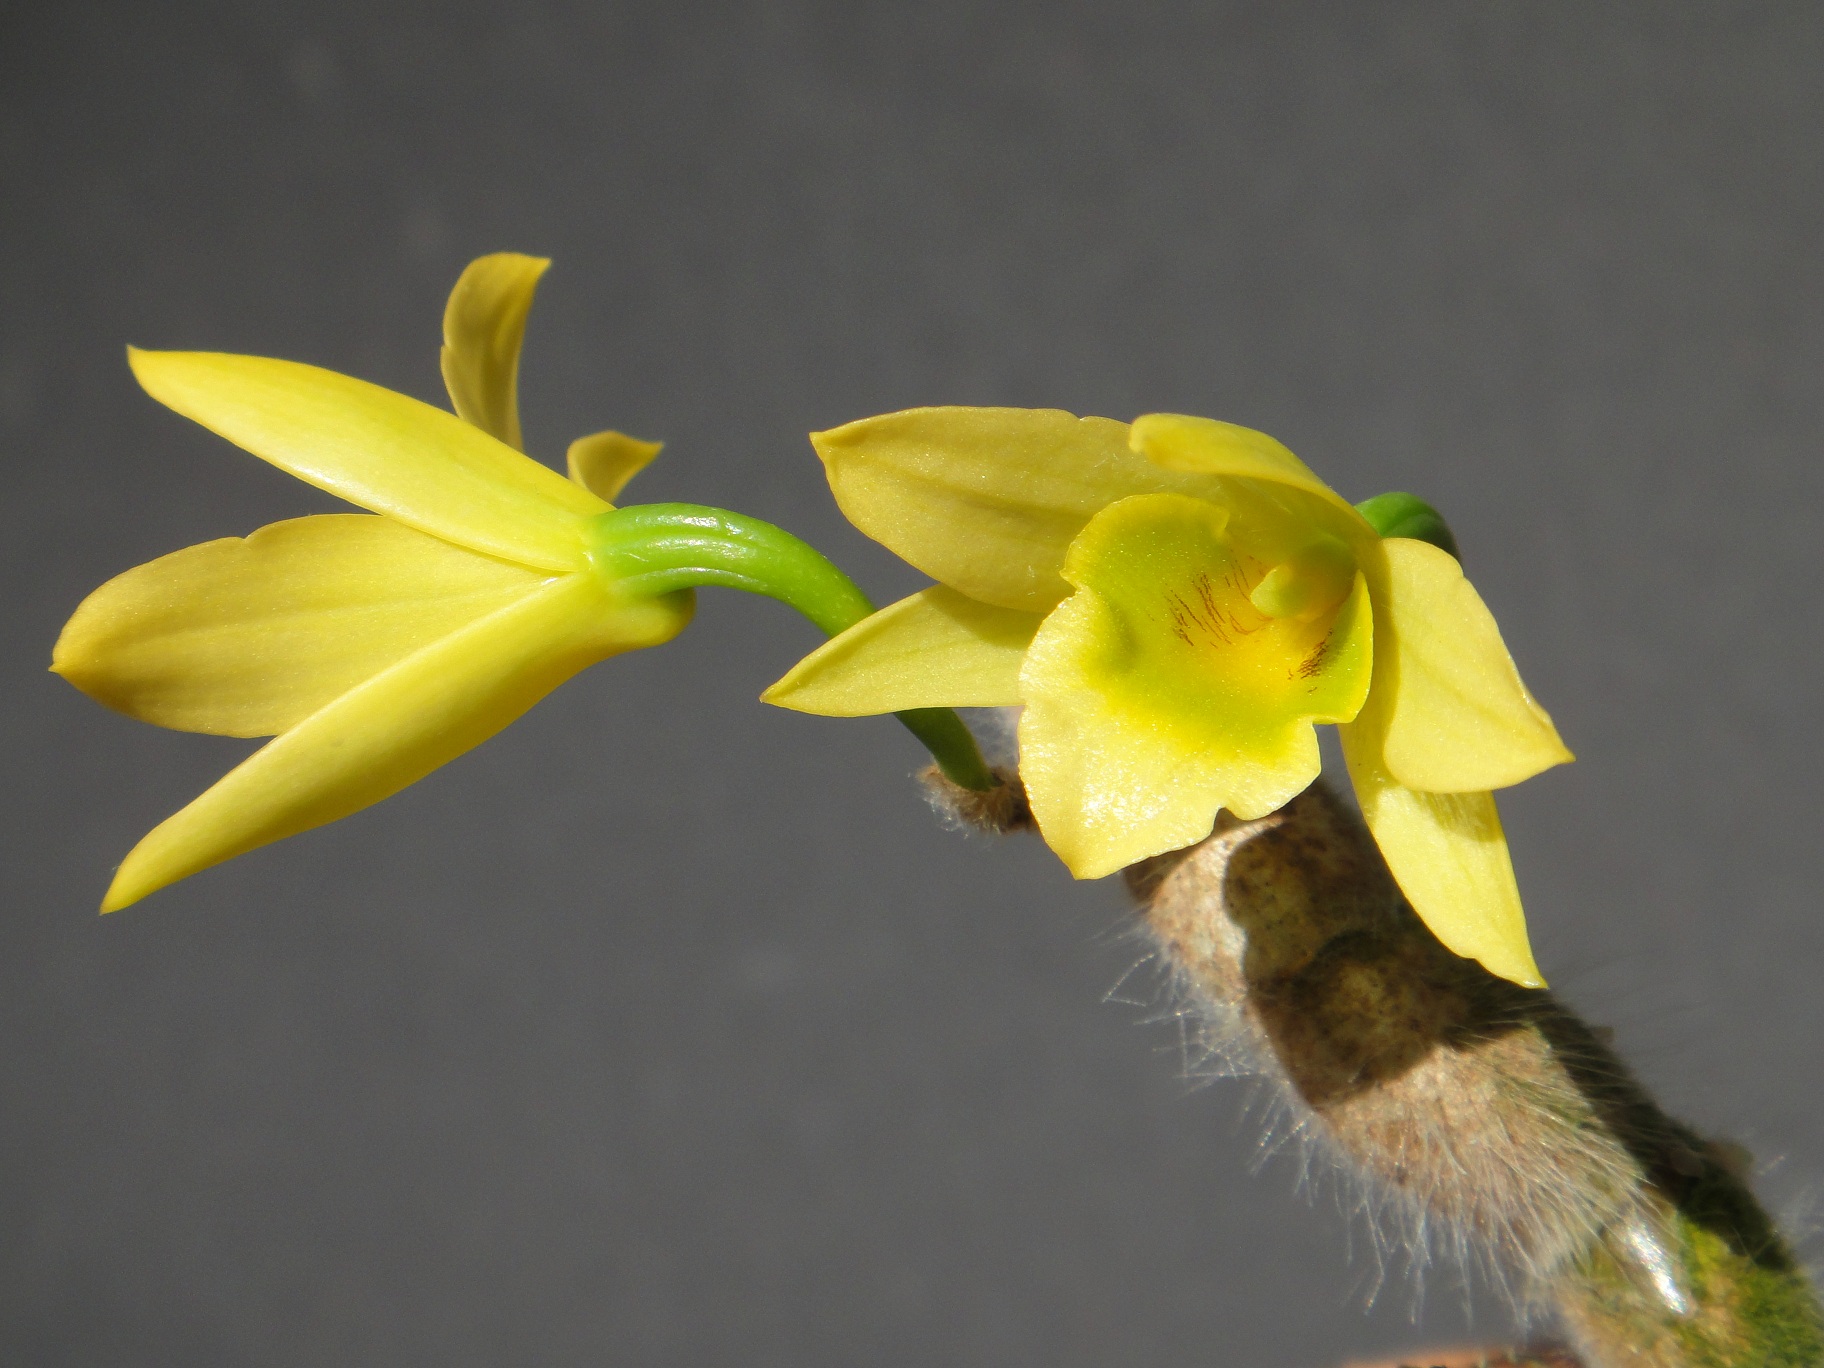 http://orchids.la.coocan.jp/Dendrobium/Dendrobium%20senile/DSC09926.JPG